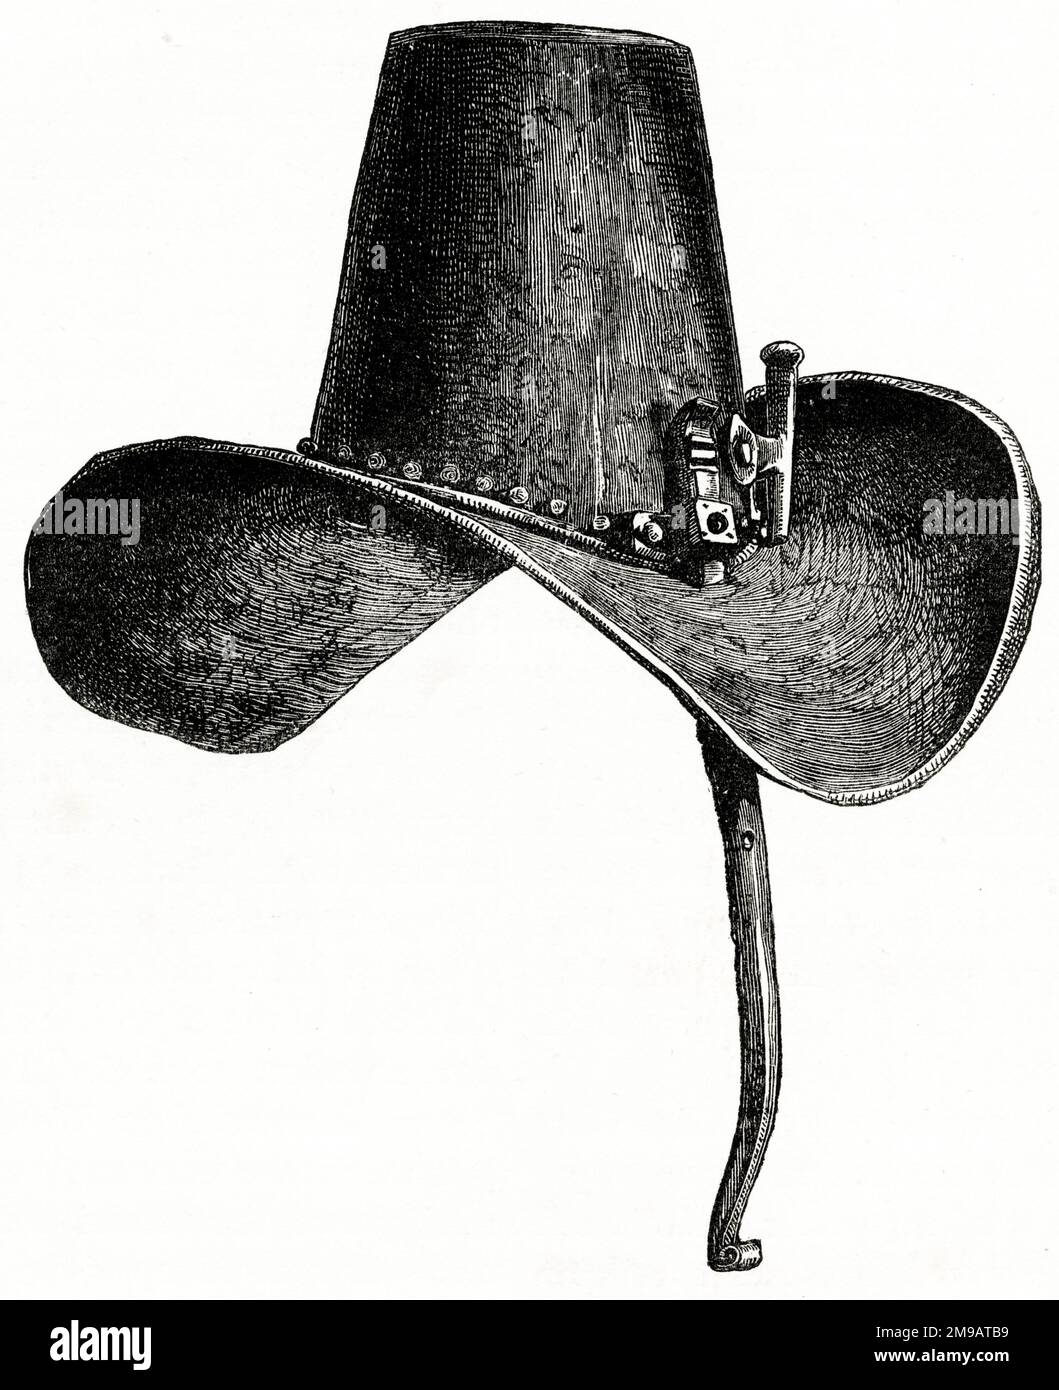 Der Eisenhut von König Karl I., der während des Englischen Bürgerkriegs (1642-1646) getragen wurde, soll im Warwick Castle sein. Stockfoto